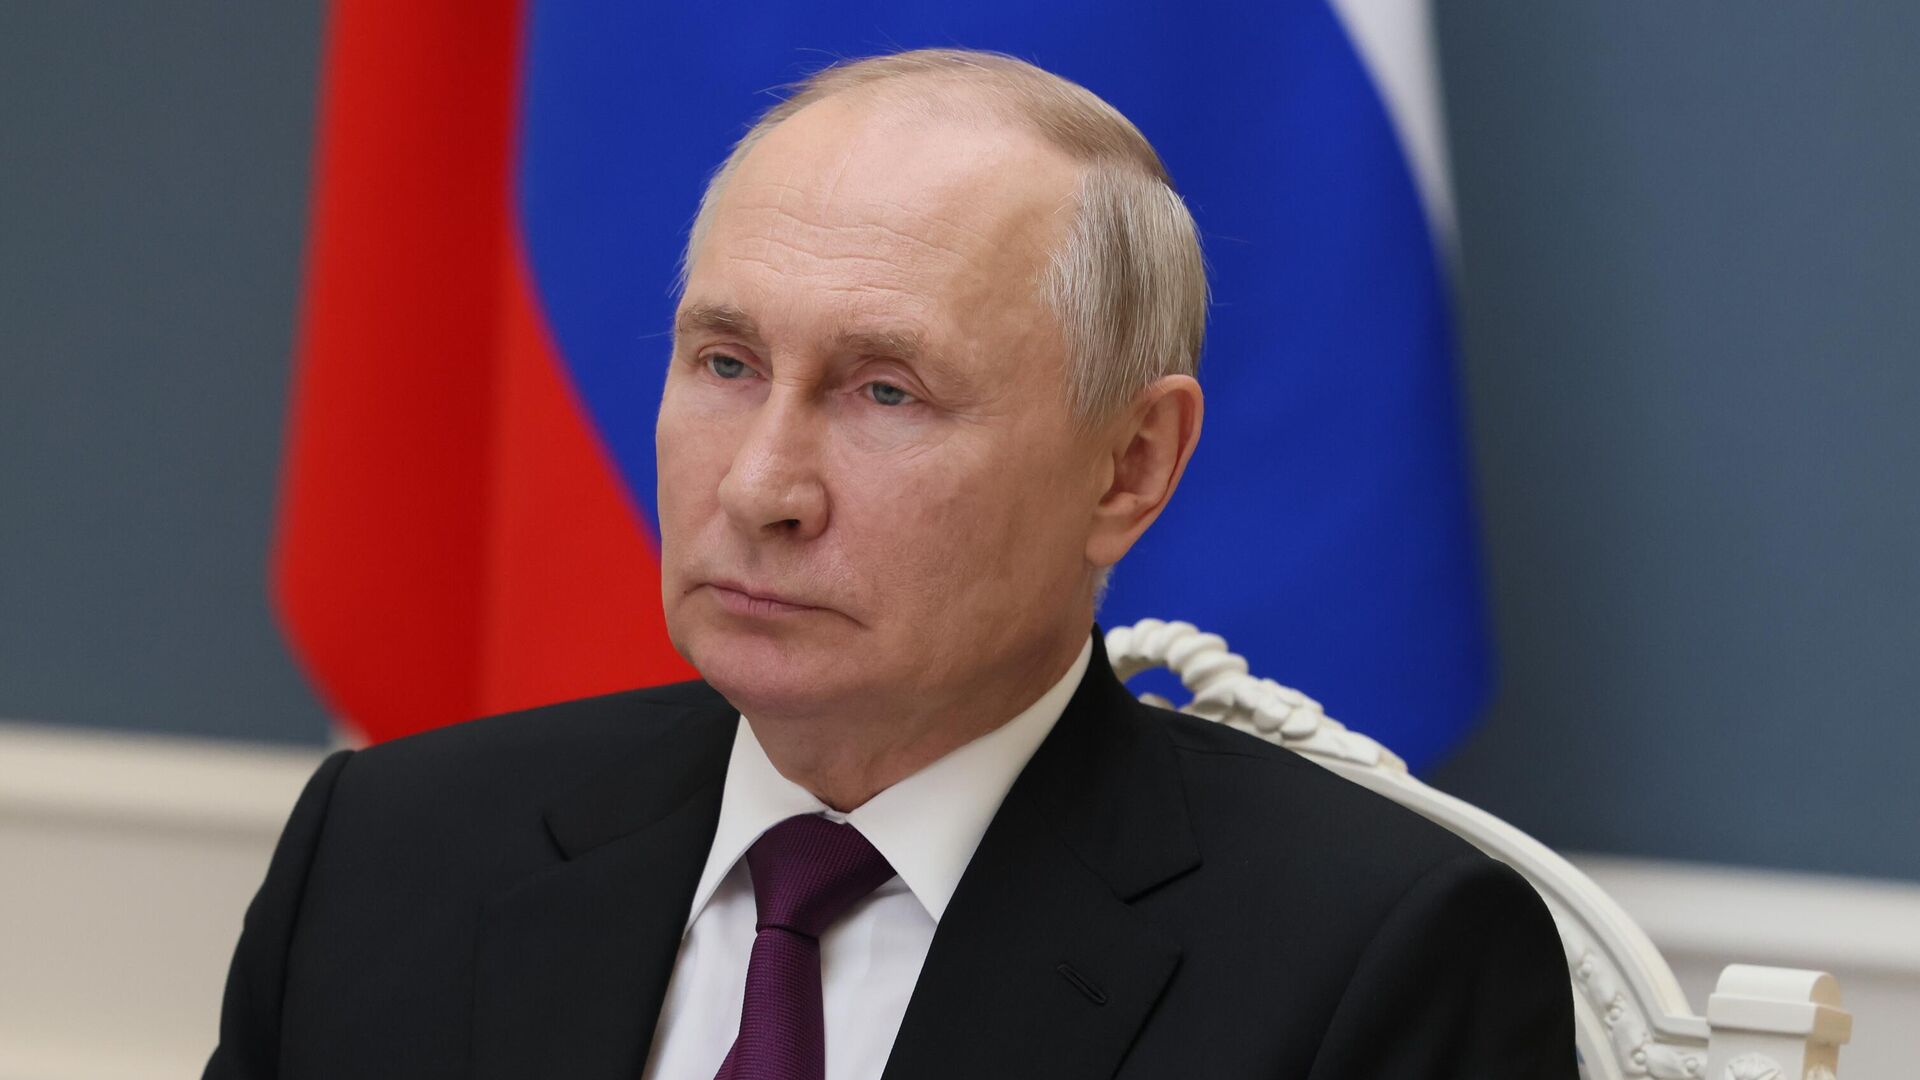 Rusiyanın hakim partiyası Putinin prezidentliyə namizədliyini dəstəklədi - VİDEO